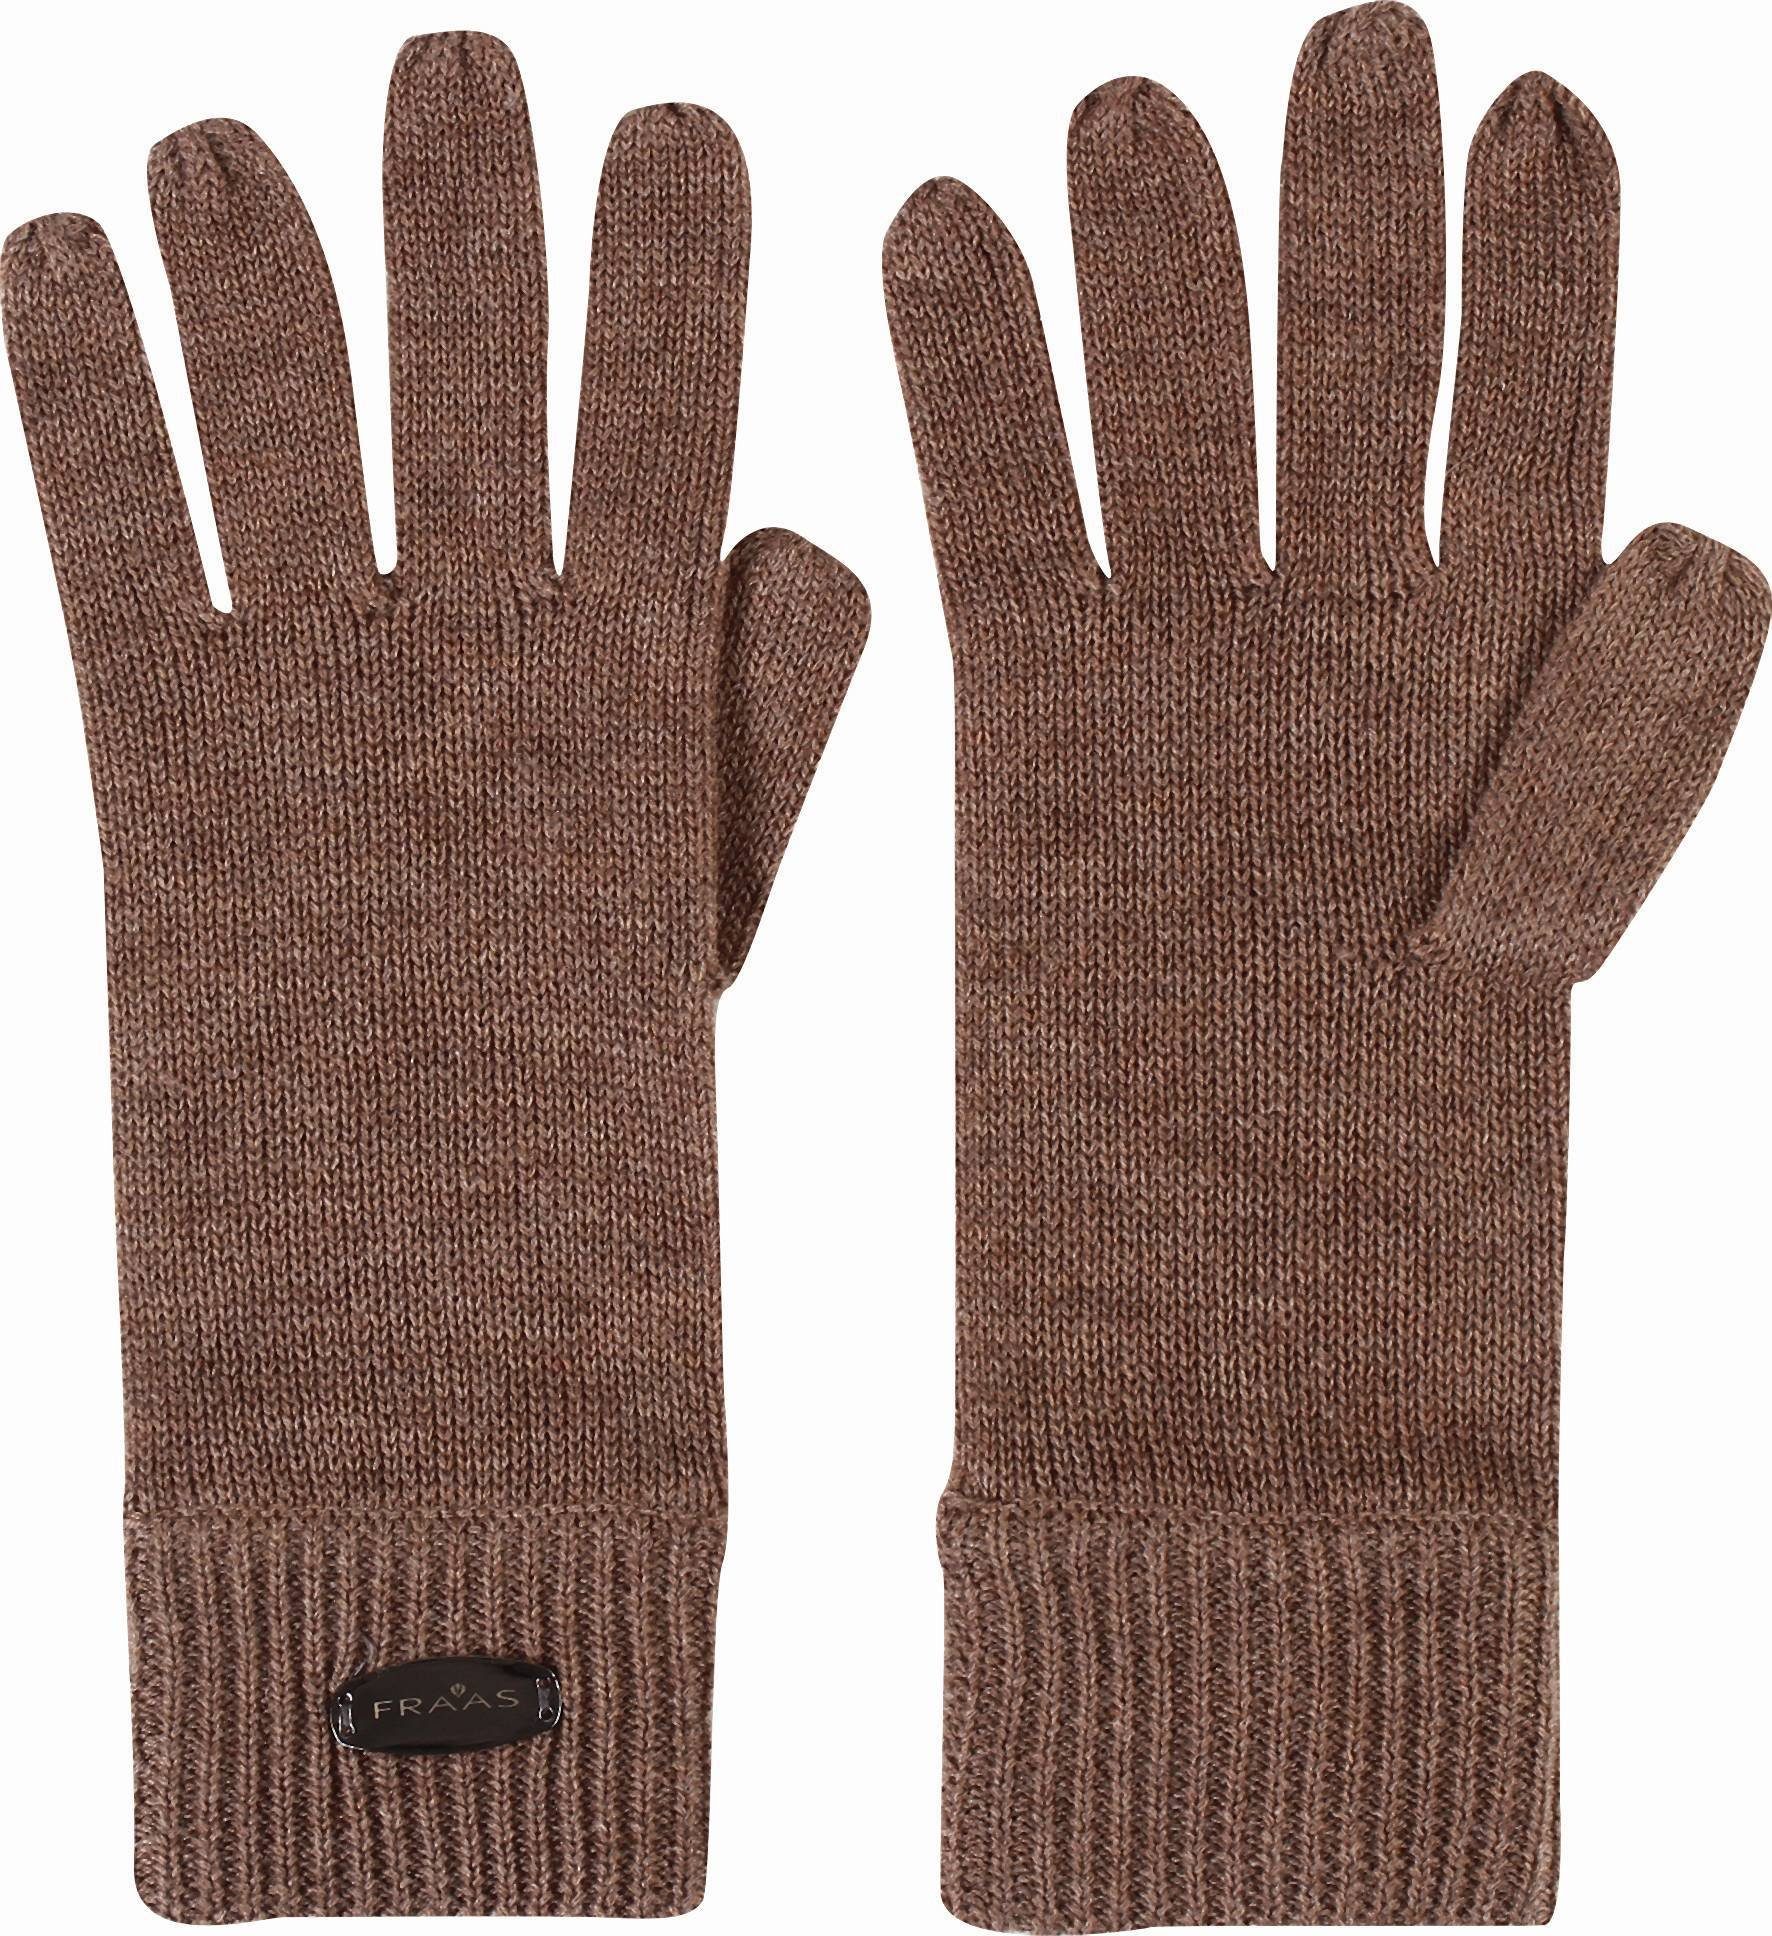 Damen Handschuhe Fraas Strickhandschuhe Wollhandbekleidung